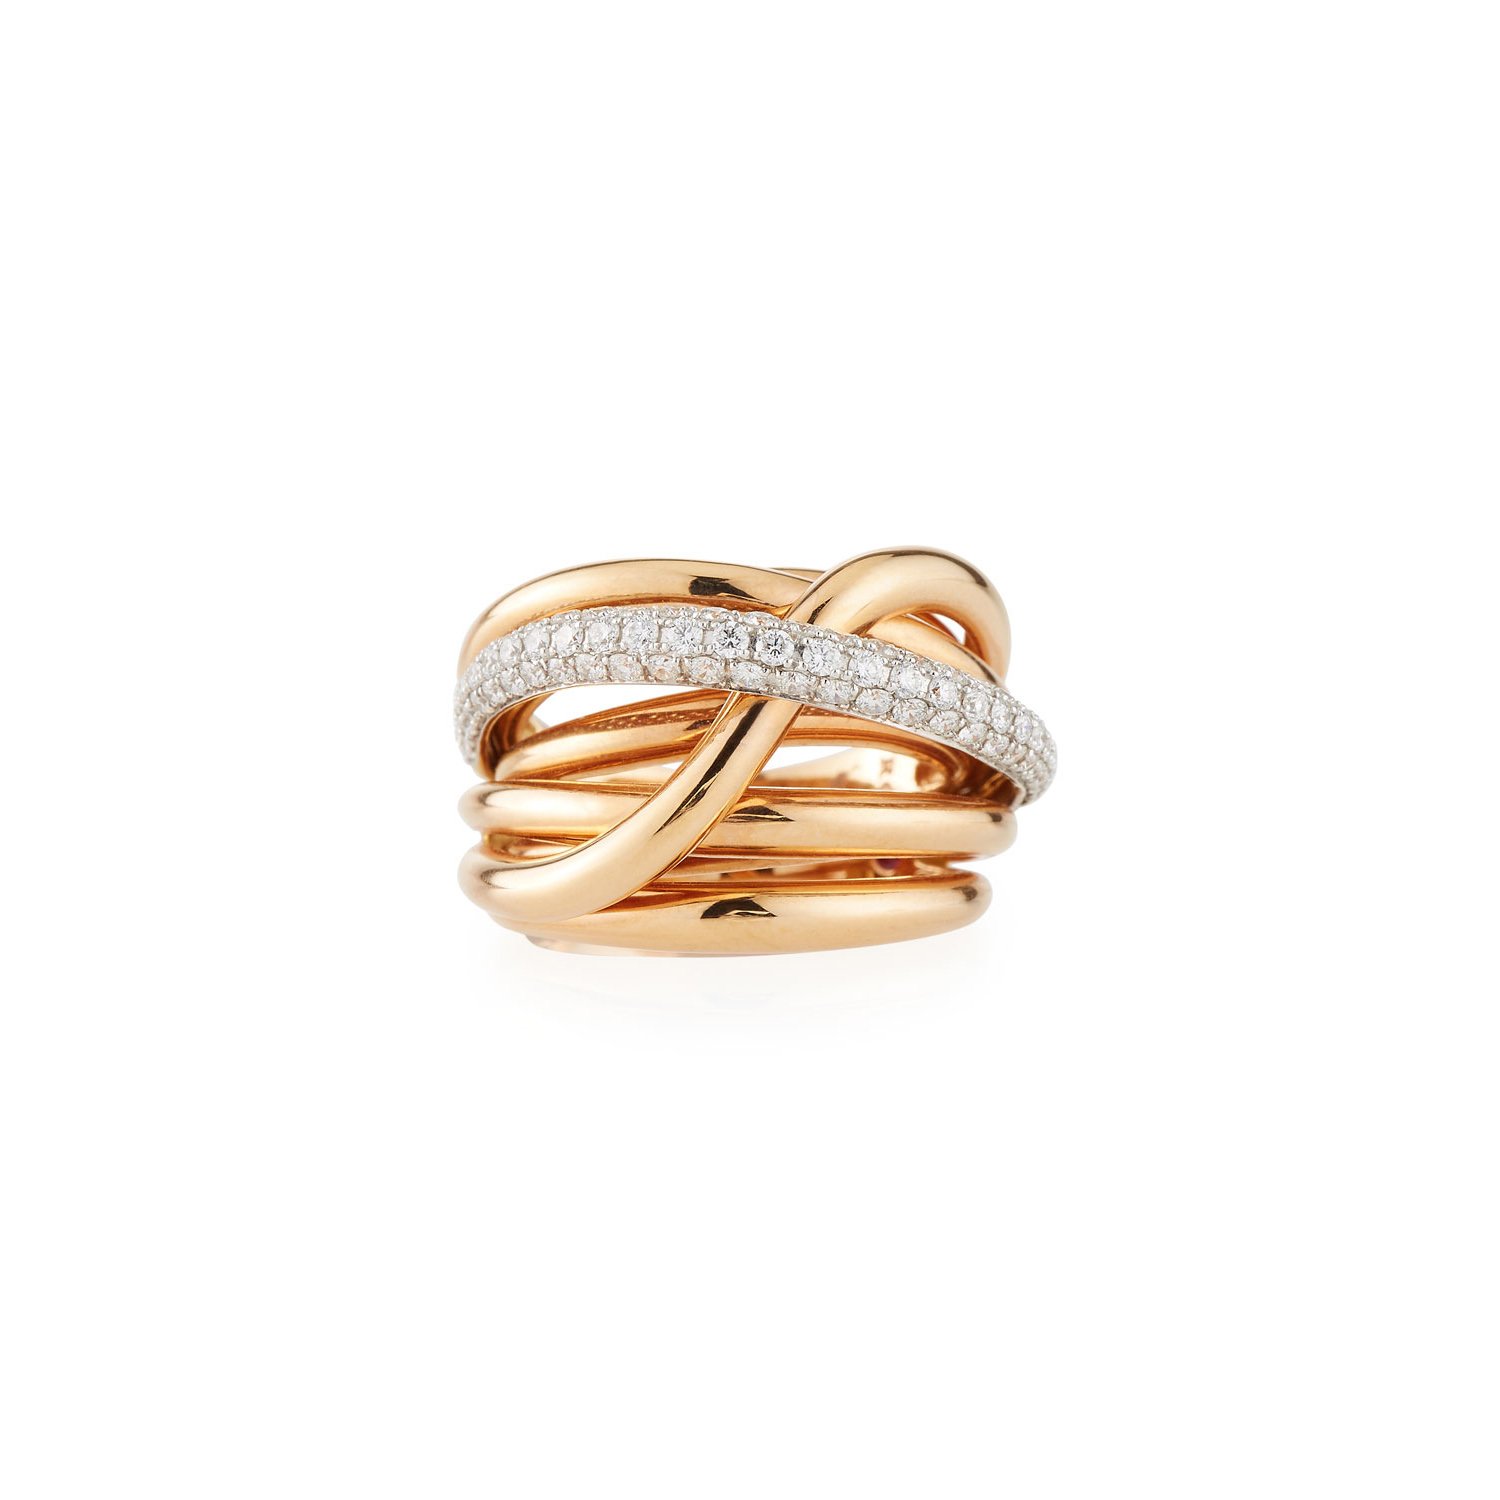 Sprzedaż hurtowa na zamówienie 18-karatowego różowego złota Biżuteria OEM/ODM Diamentowy pierścionek zachodzący na damski projektant biżuterii